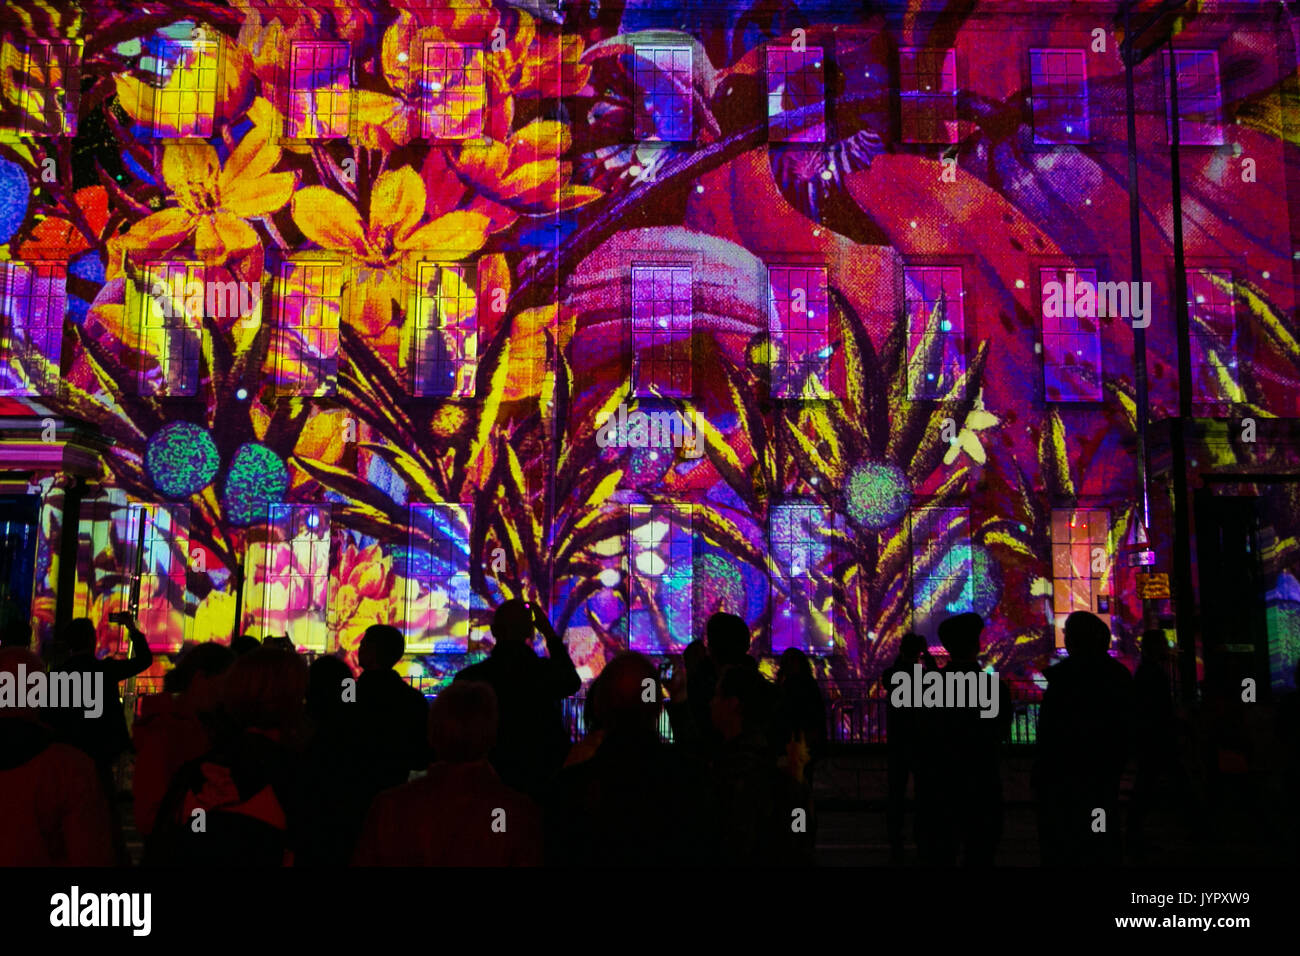 Les projections en 3D mappée Andrew's Square dans le cadre du début de l'Edinburgh International Festival. Le spectacle s'appelle 'Bloom. Banque D'Images